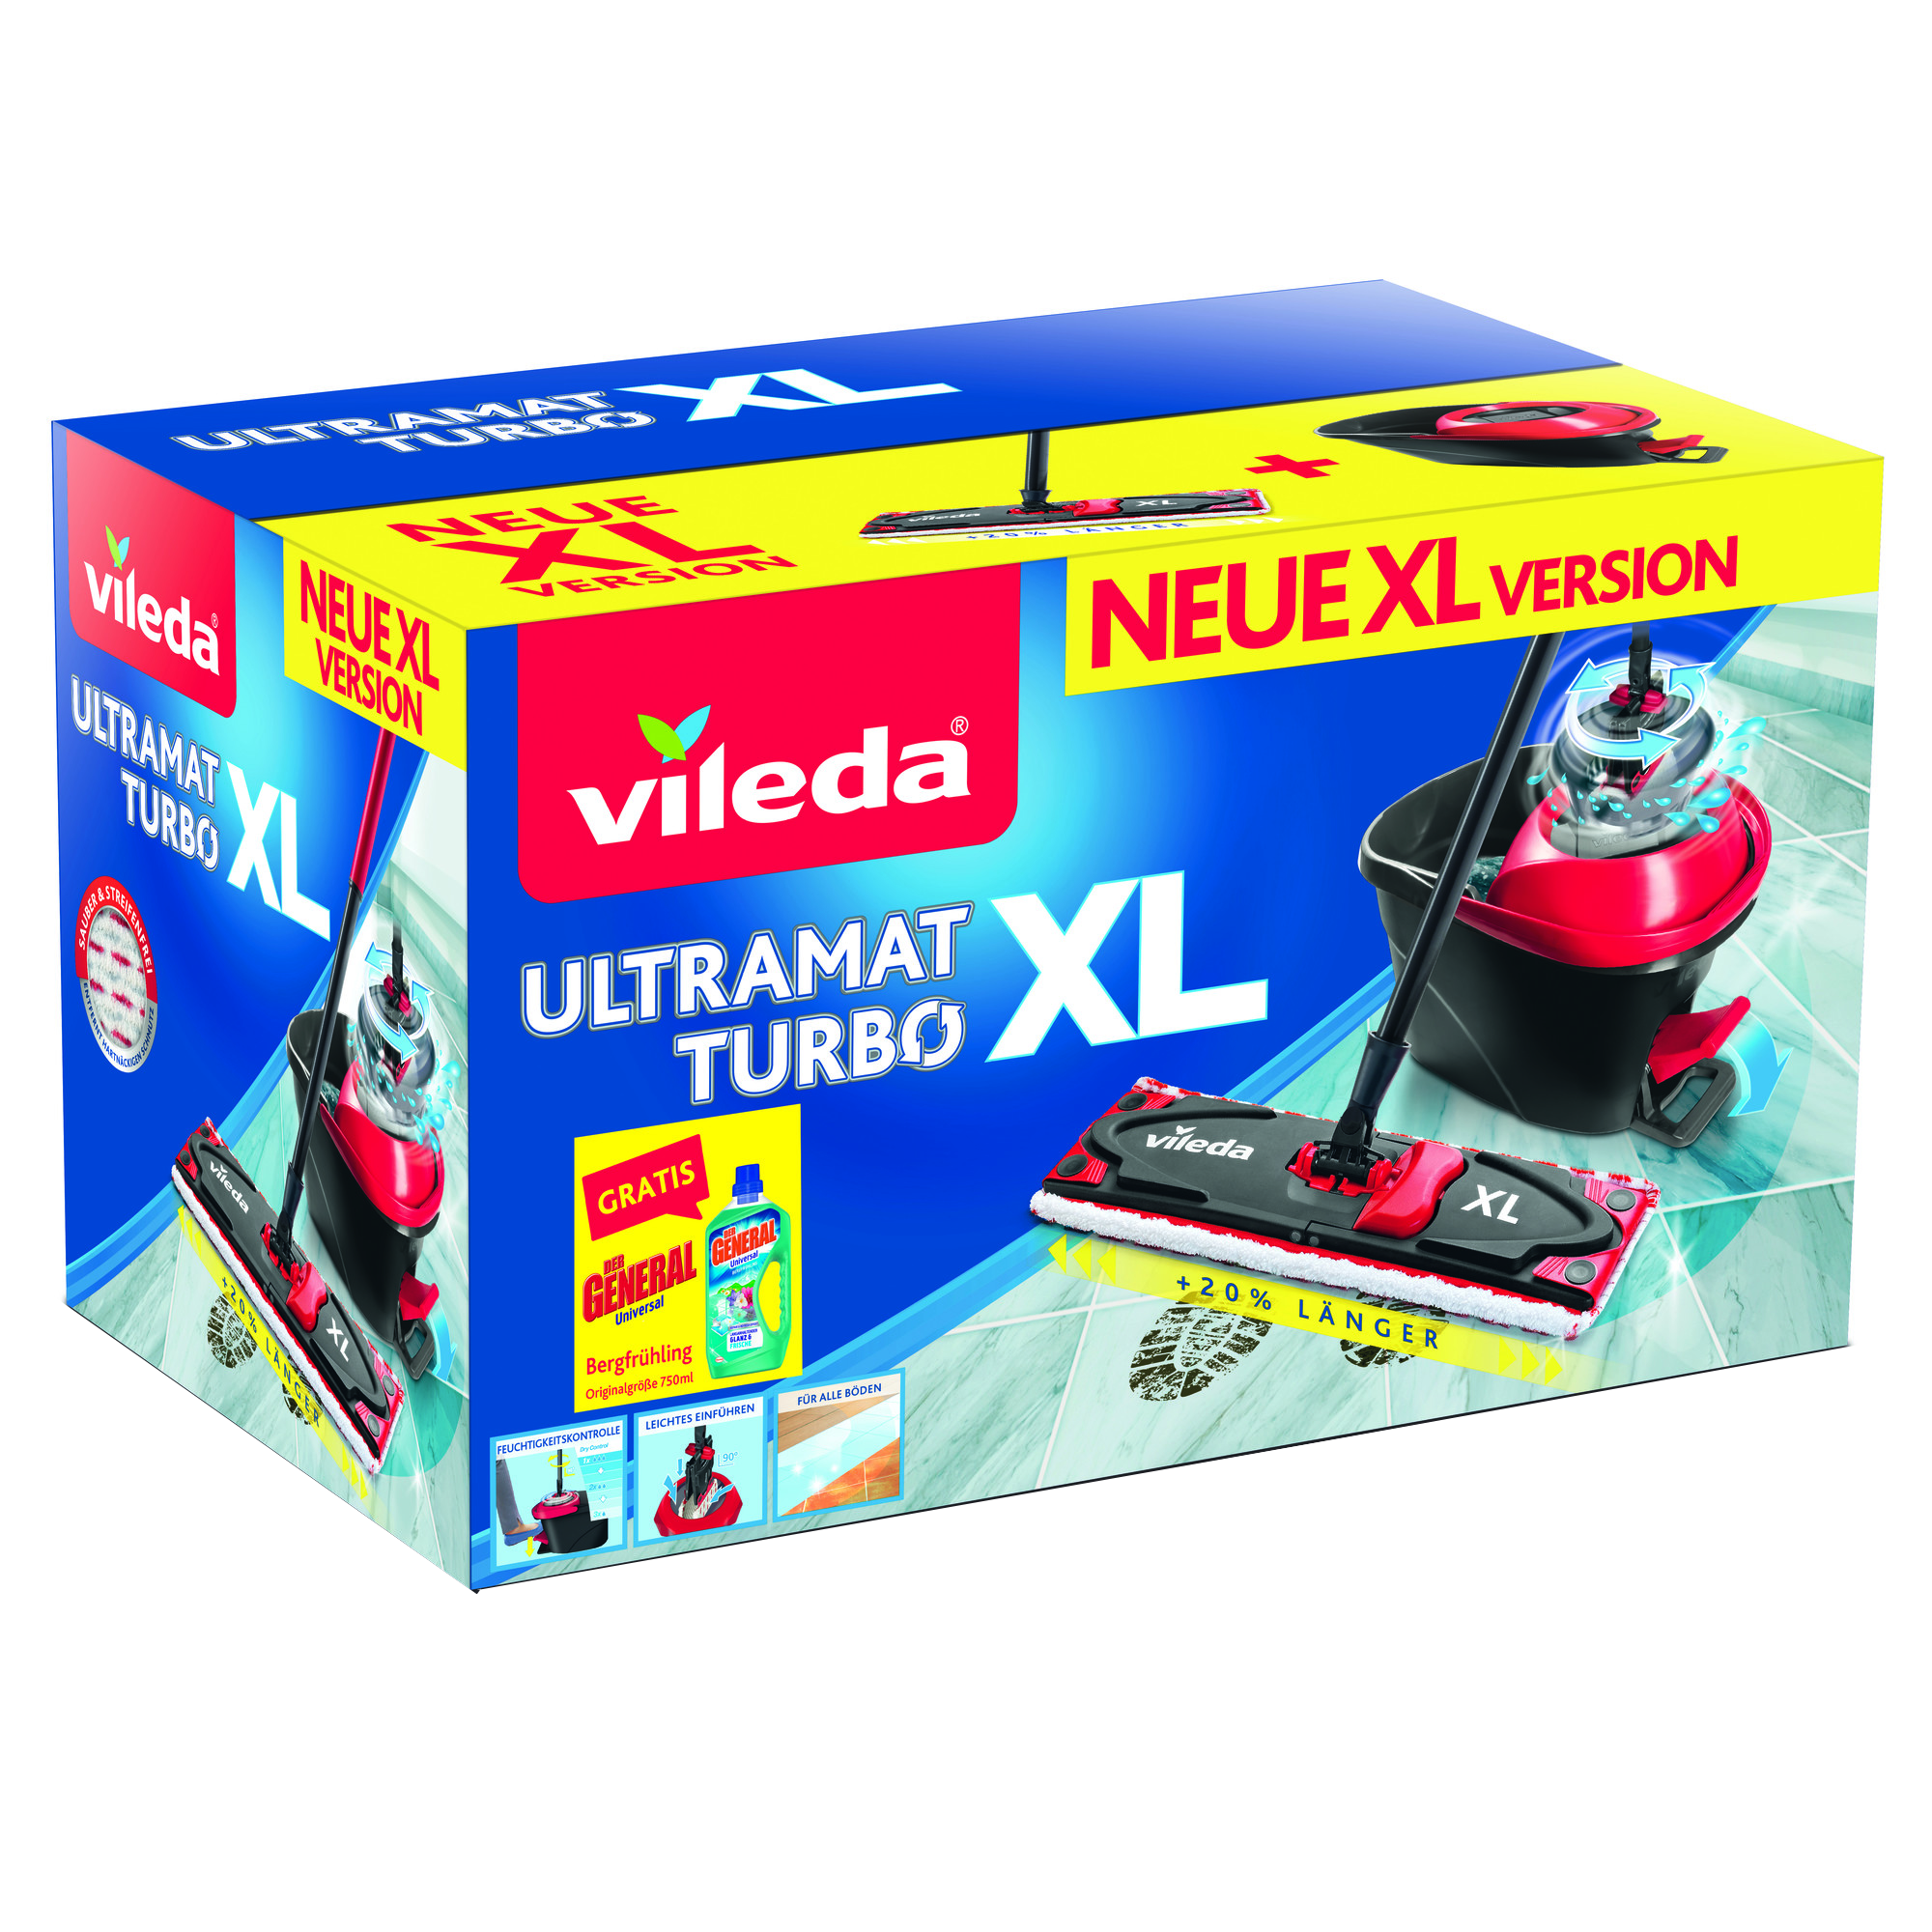 Bodenwischer-Set 'UltraMat XL' mit Reinigungsmittel + product picture